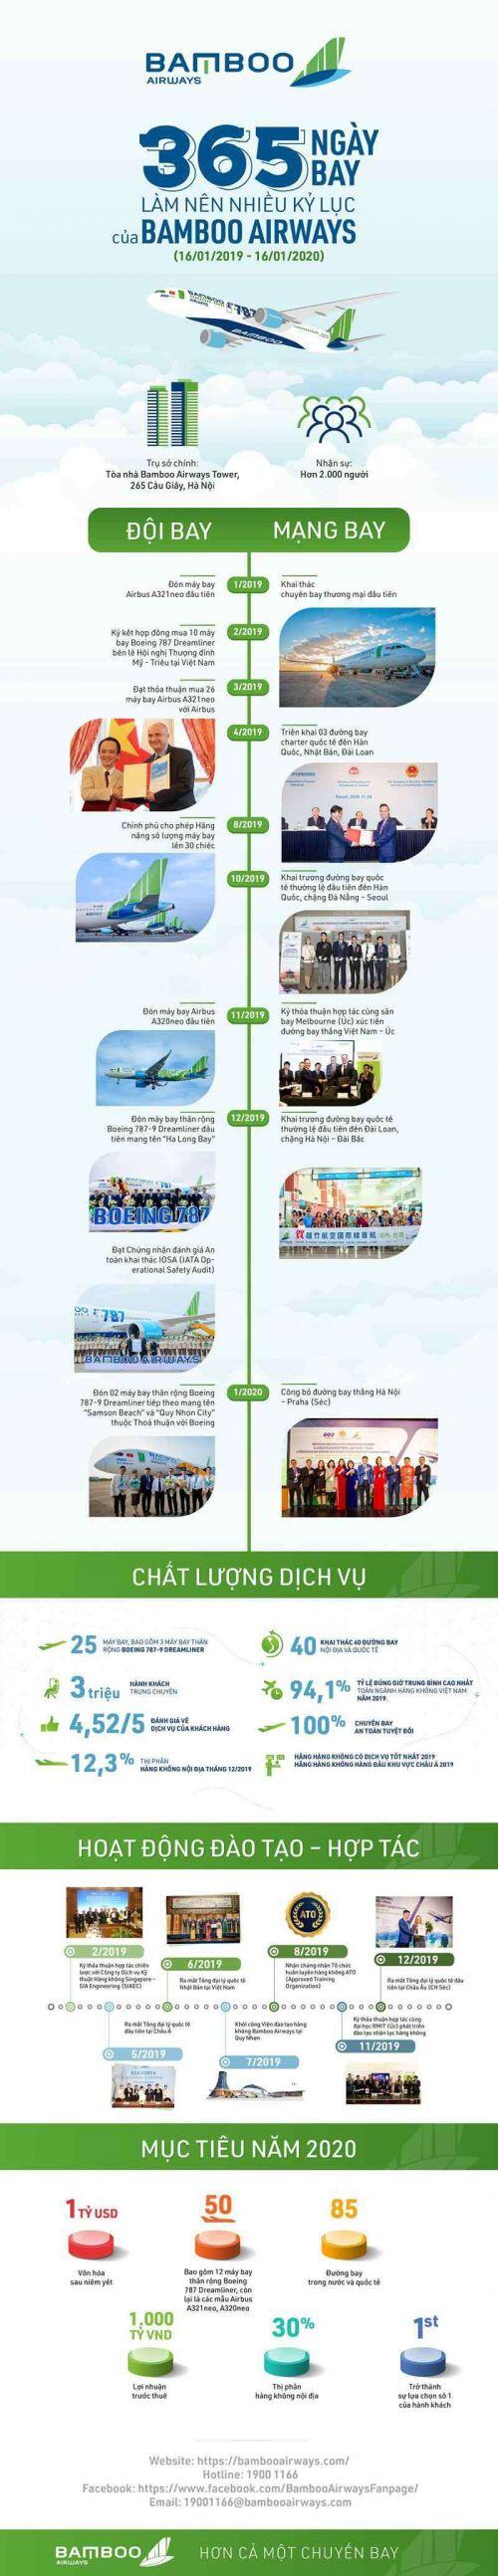 Những dấu mốc ấn tượng trong 365 ngày bay của Bamboo Airways